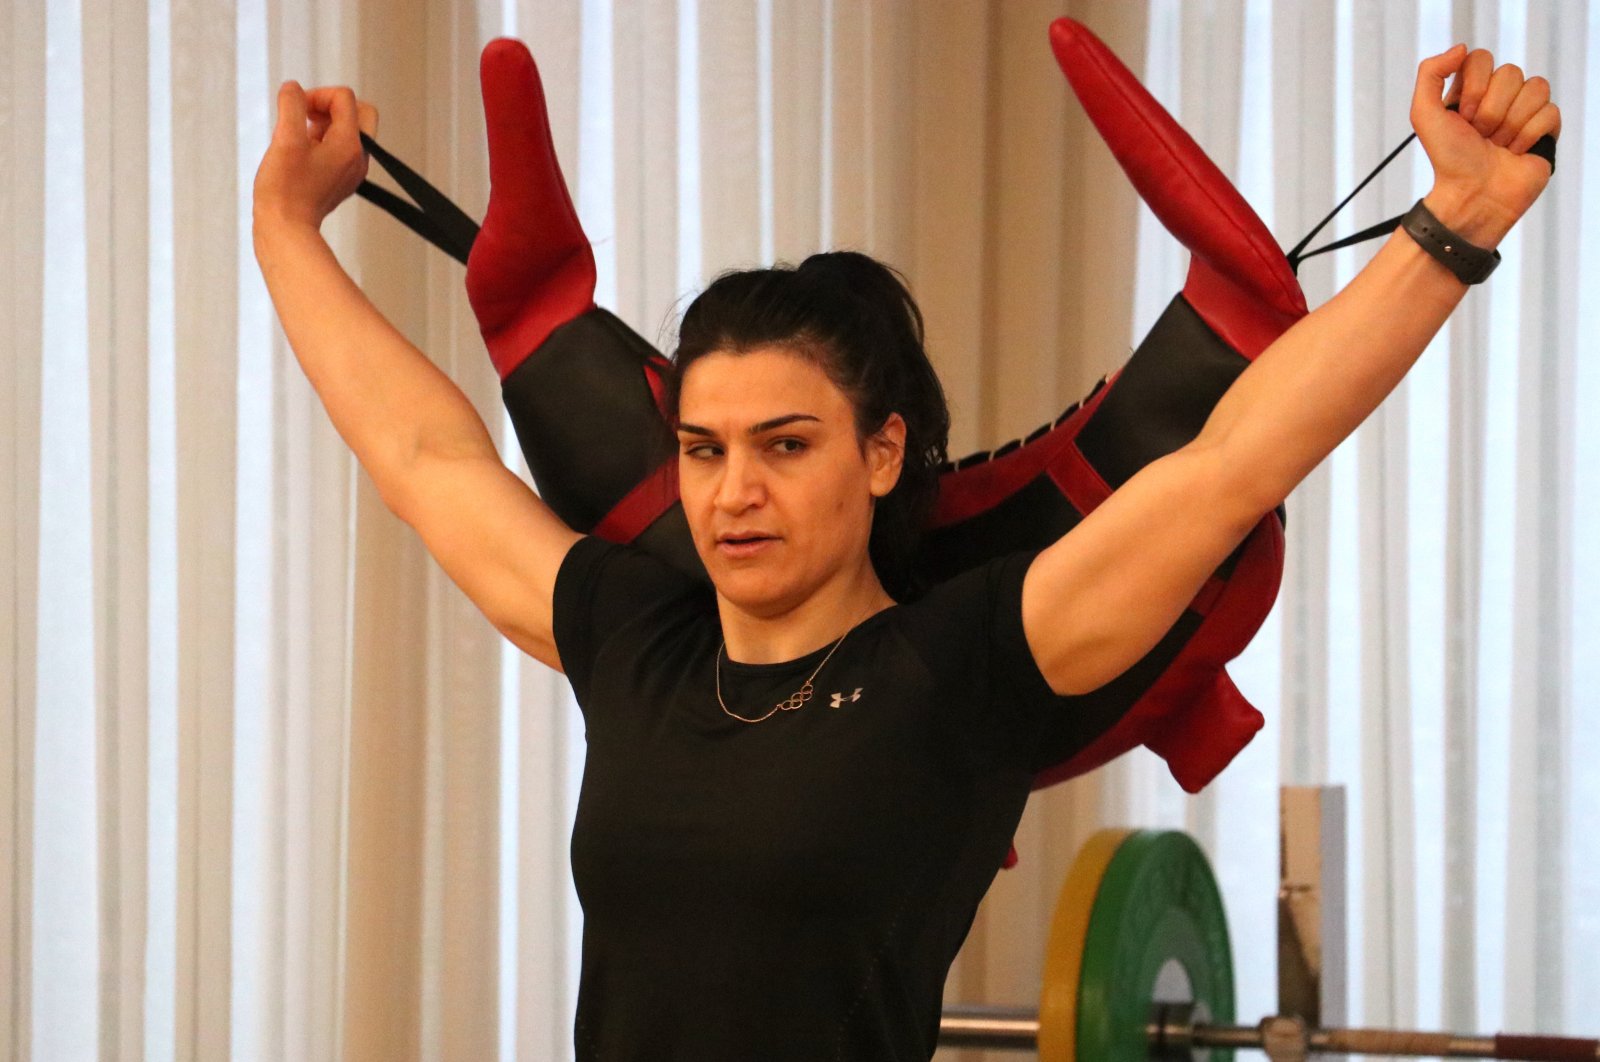 Görme engelli Türk judocu olimpiyat madalyalı sporcuyu izledi